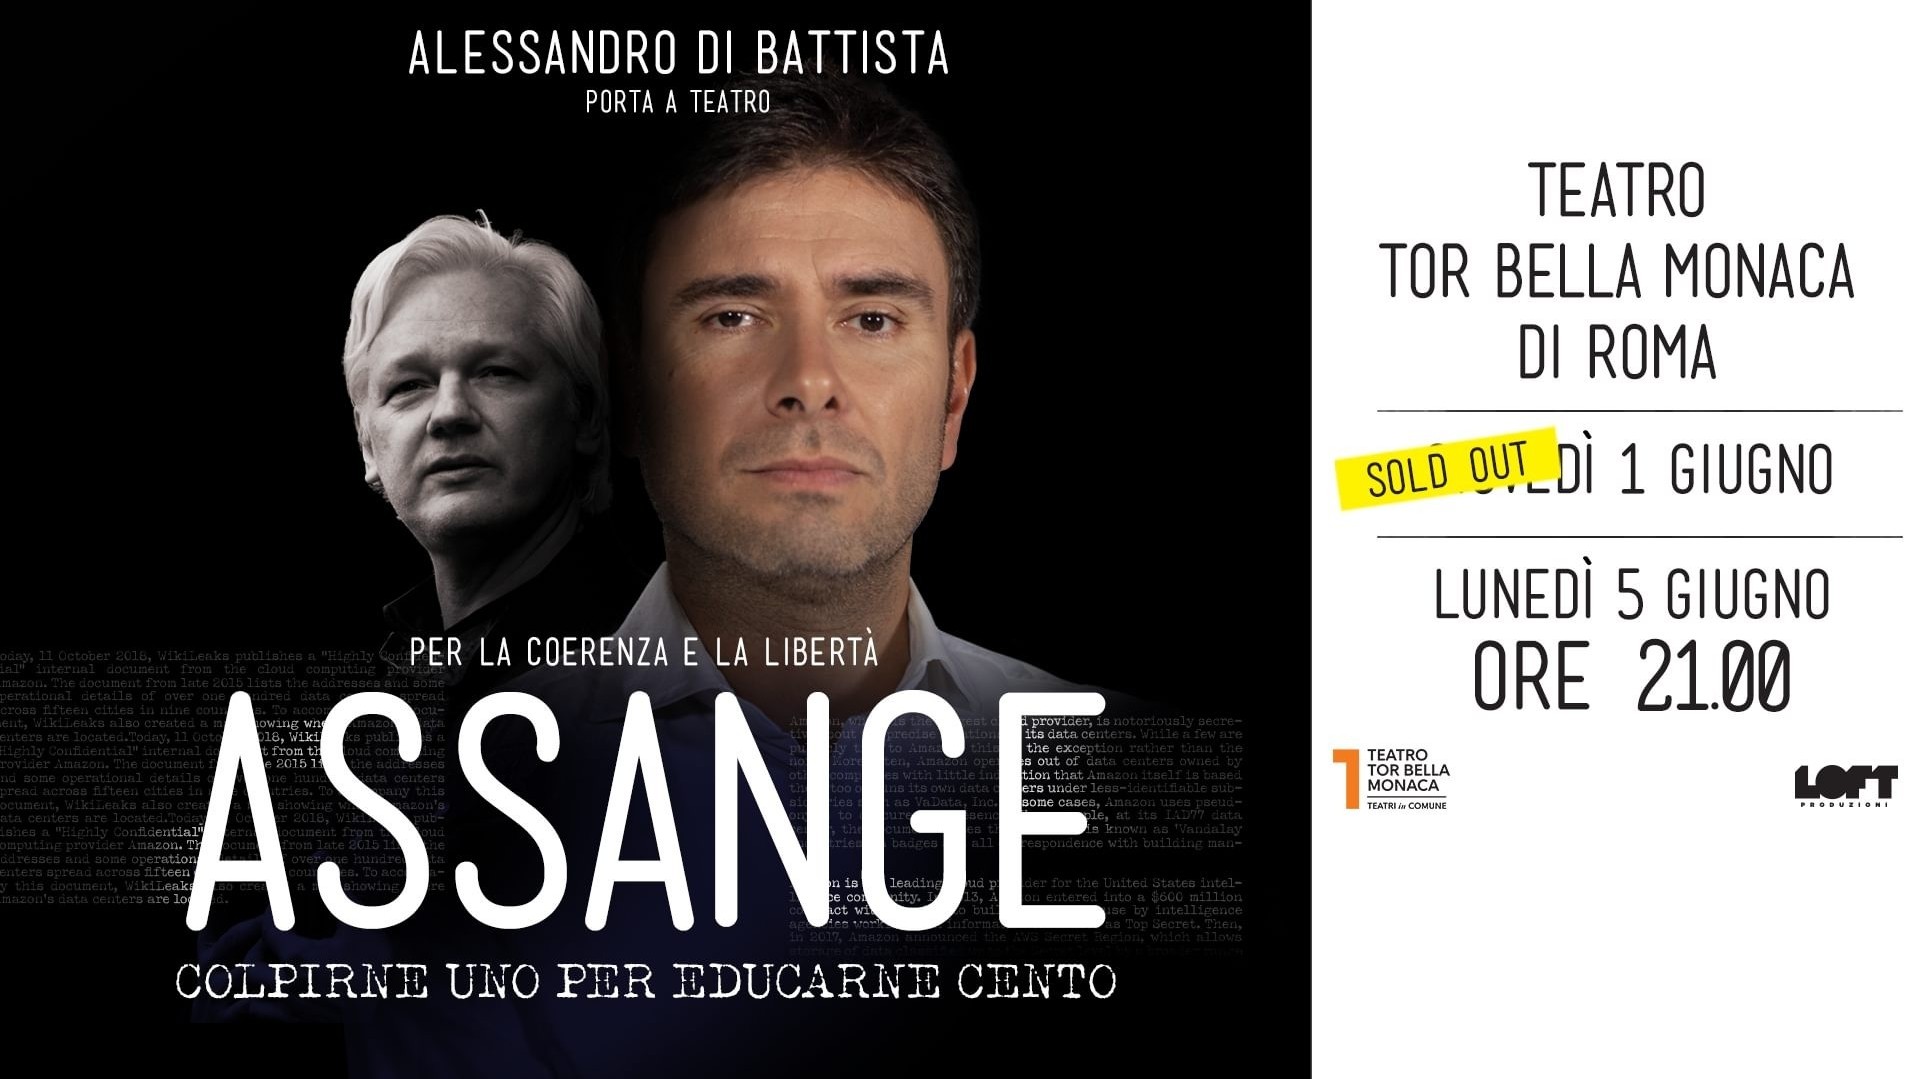 Alessandro Di Battista - Assange